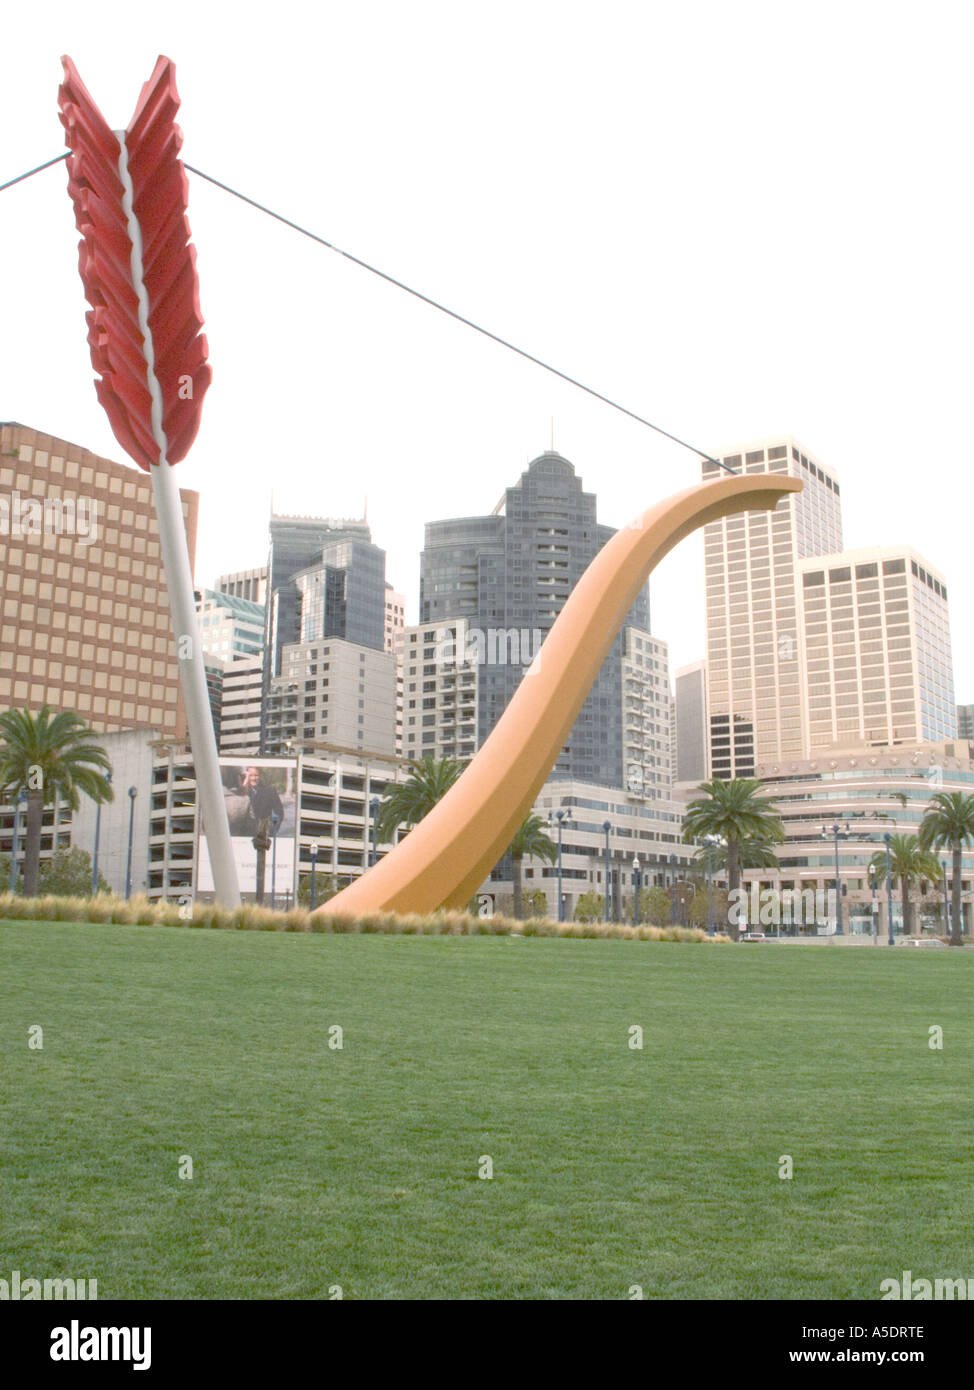 Diese Skulptur namens Cupids Span wurde von Richard Serra entworfen und für den Hauptsitz von The Gap in San Francisco in Auftrag gegeben. Stockfoto